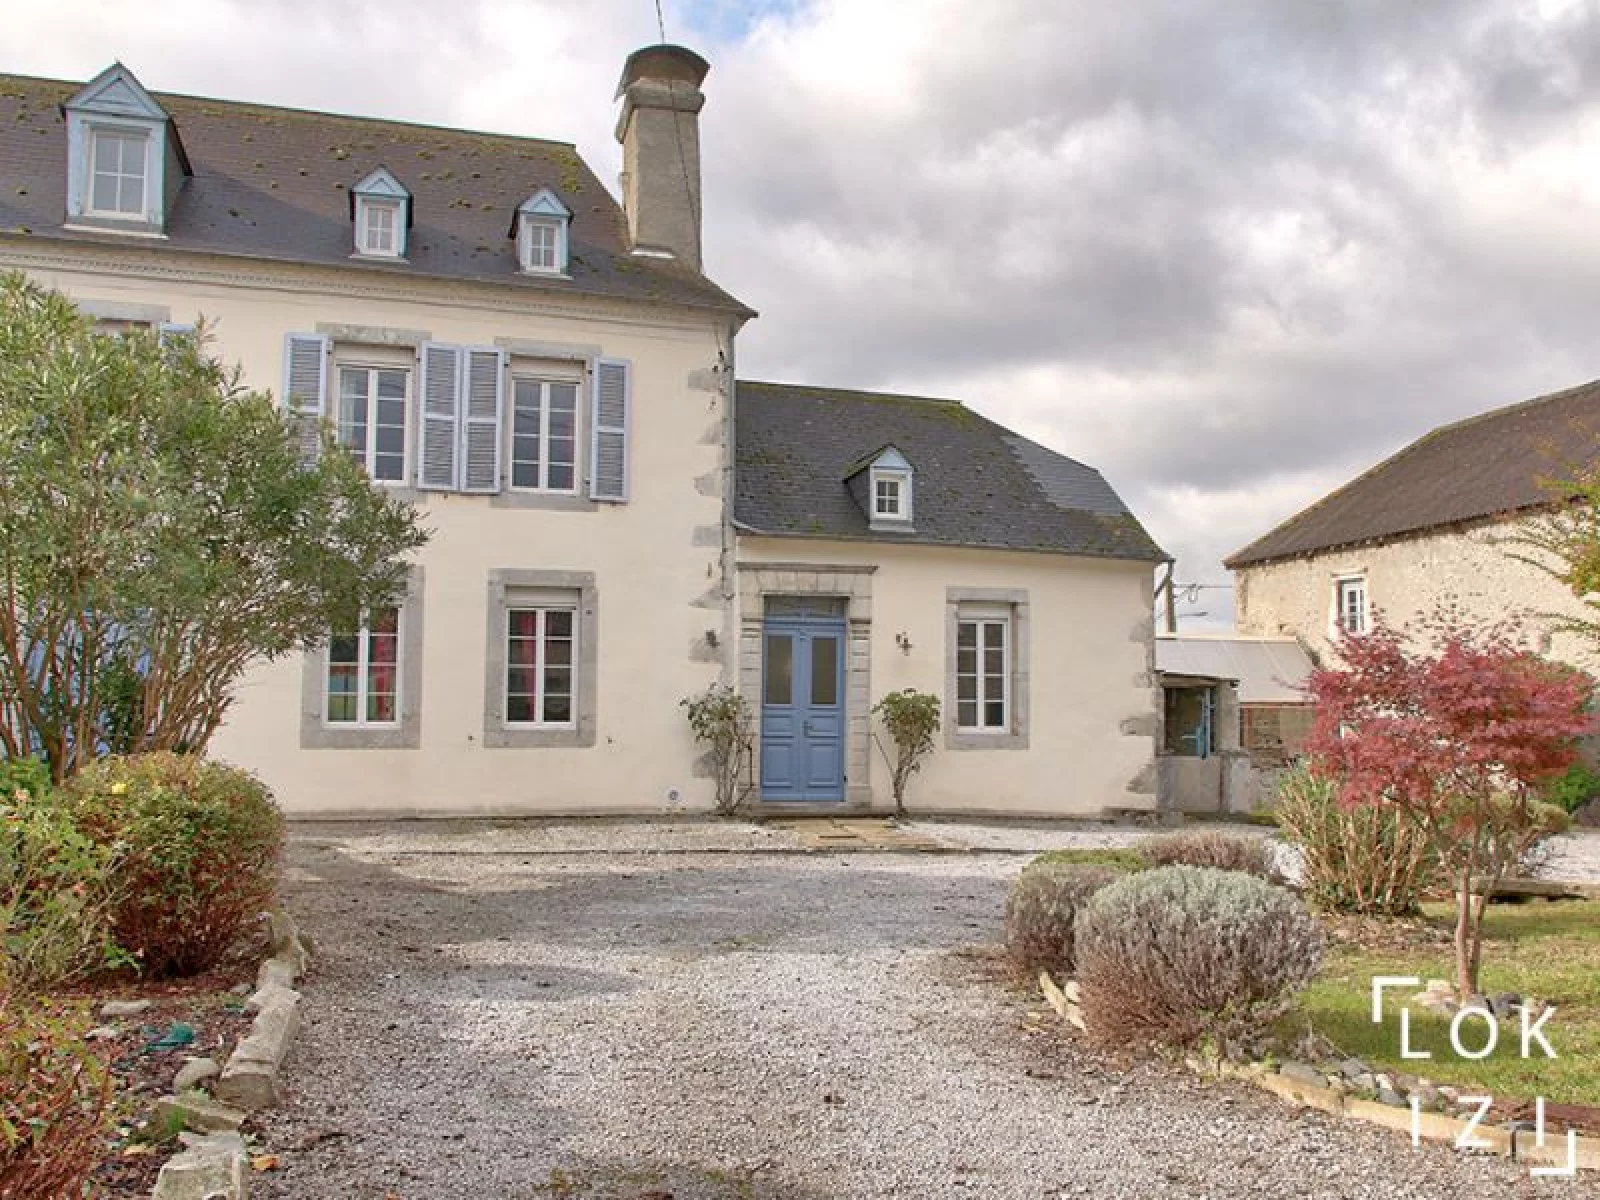 Location maison meublée 235m², 4 chambres, jardin et piscine (Bordes - Pau 64)